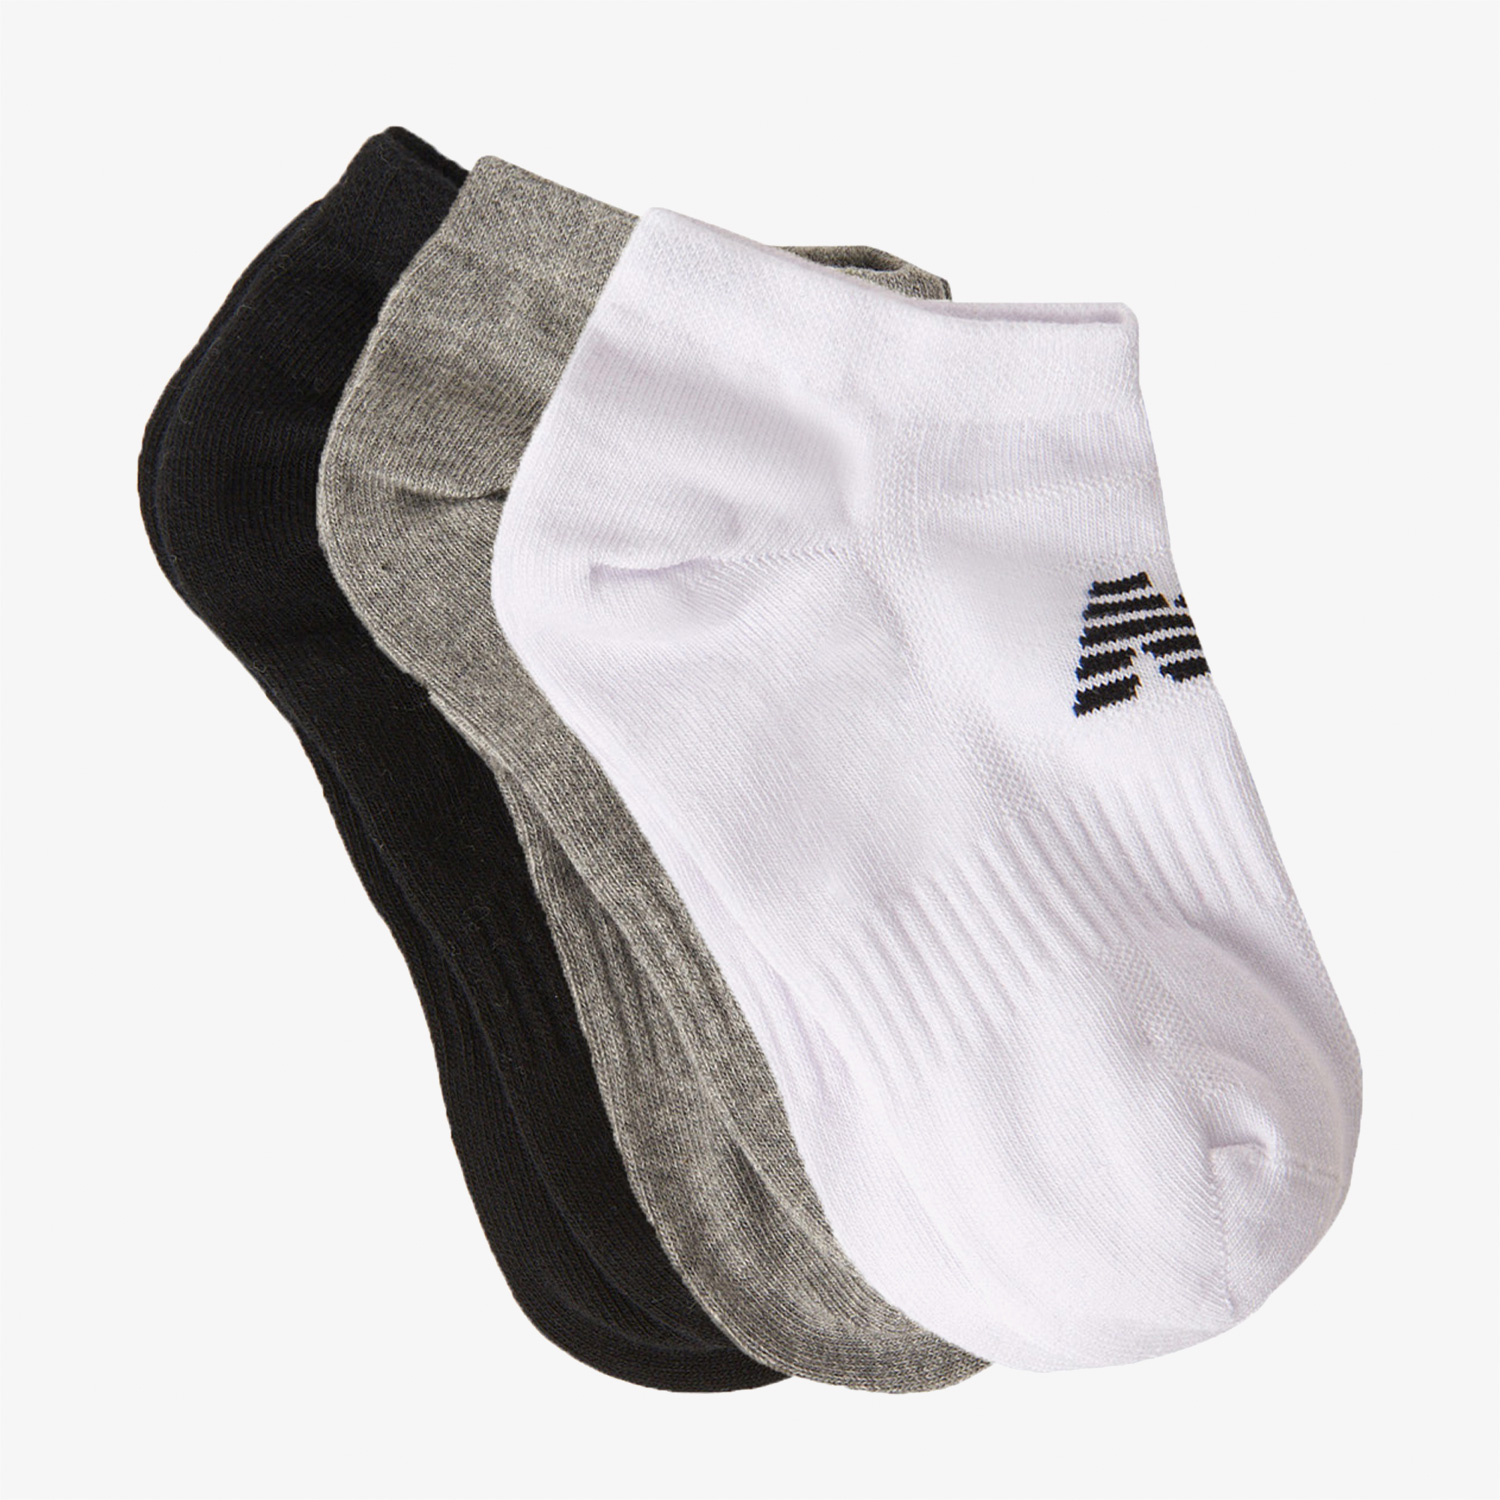 New Balance Lifestyle 3'lü Unisex Siyah/Gri/Beyaz Çorap